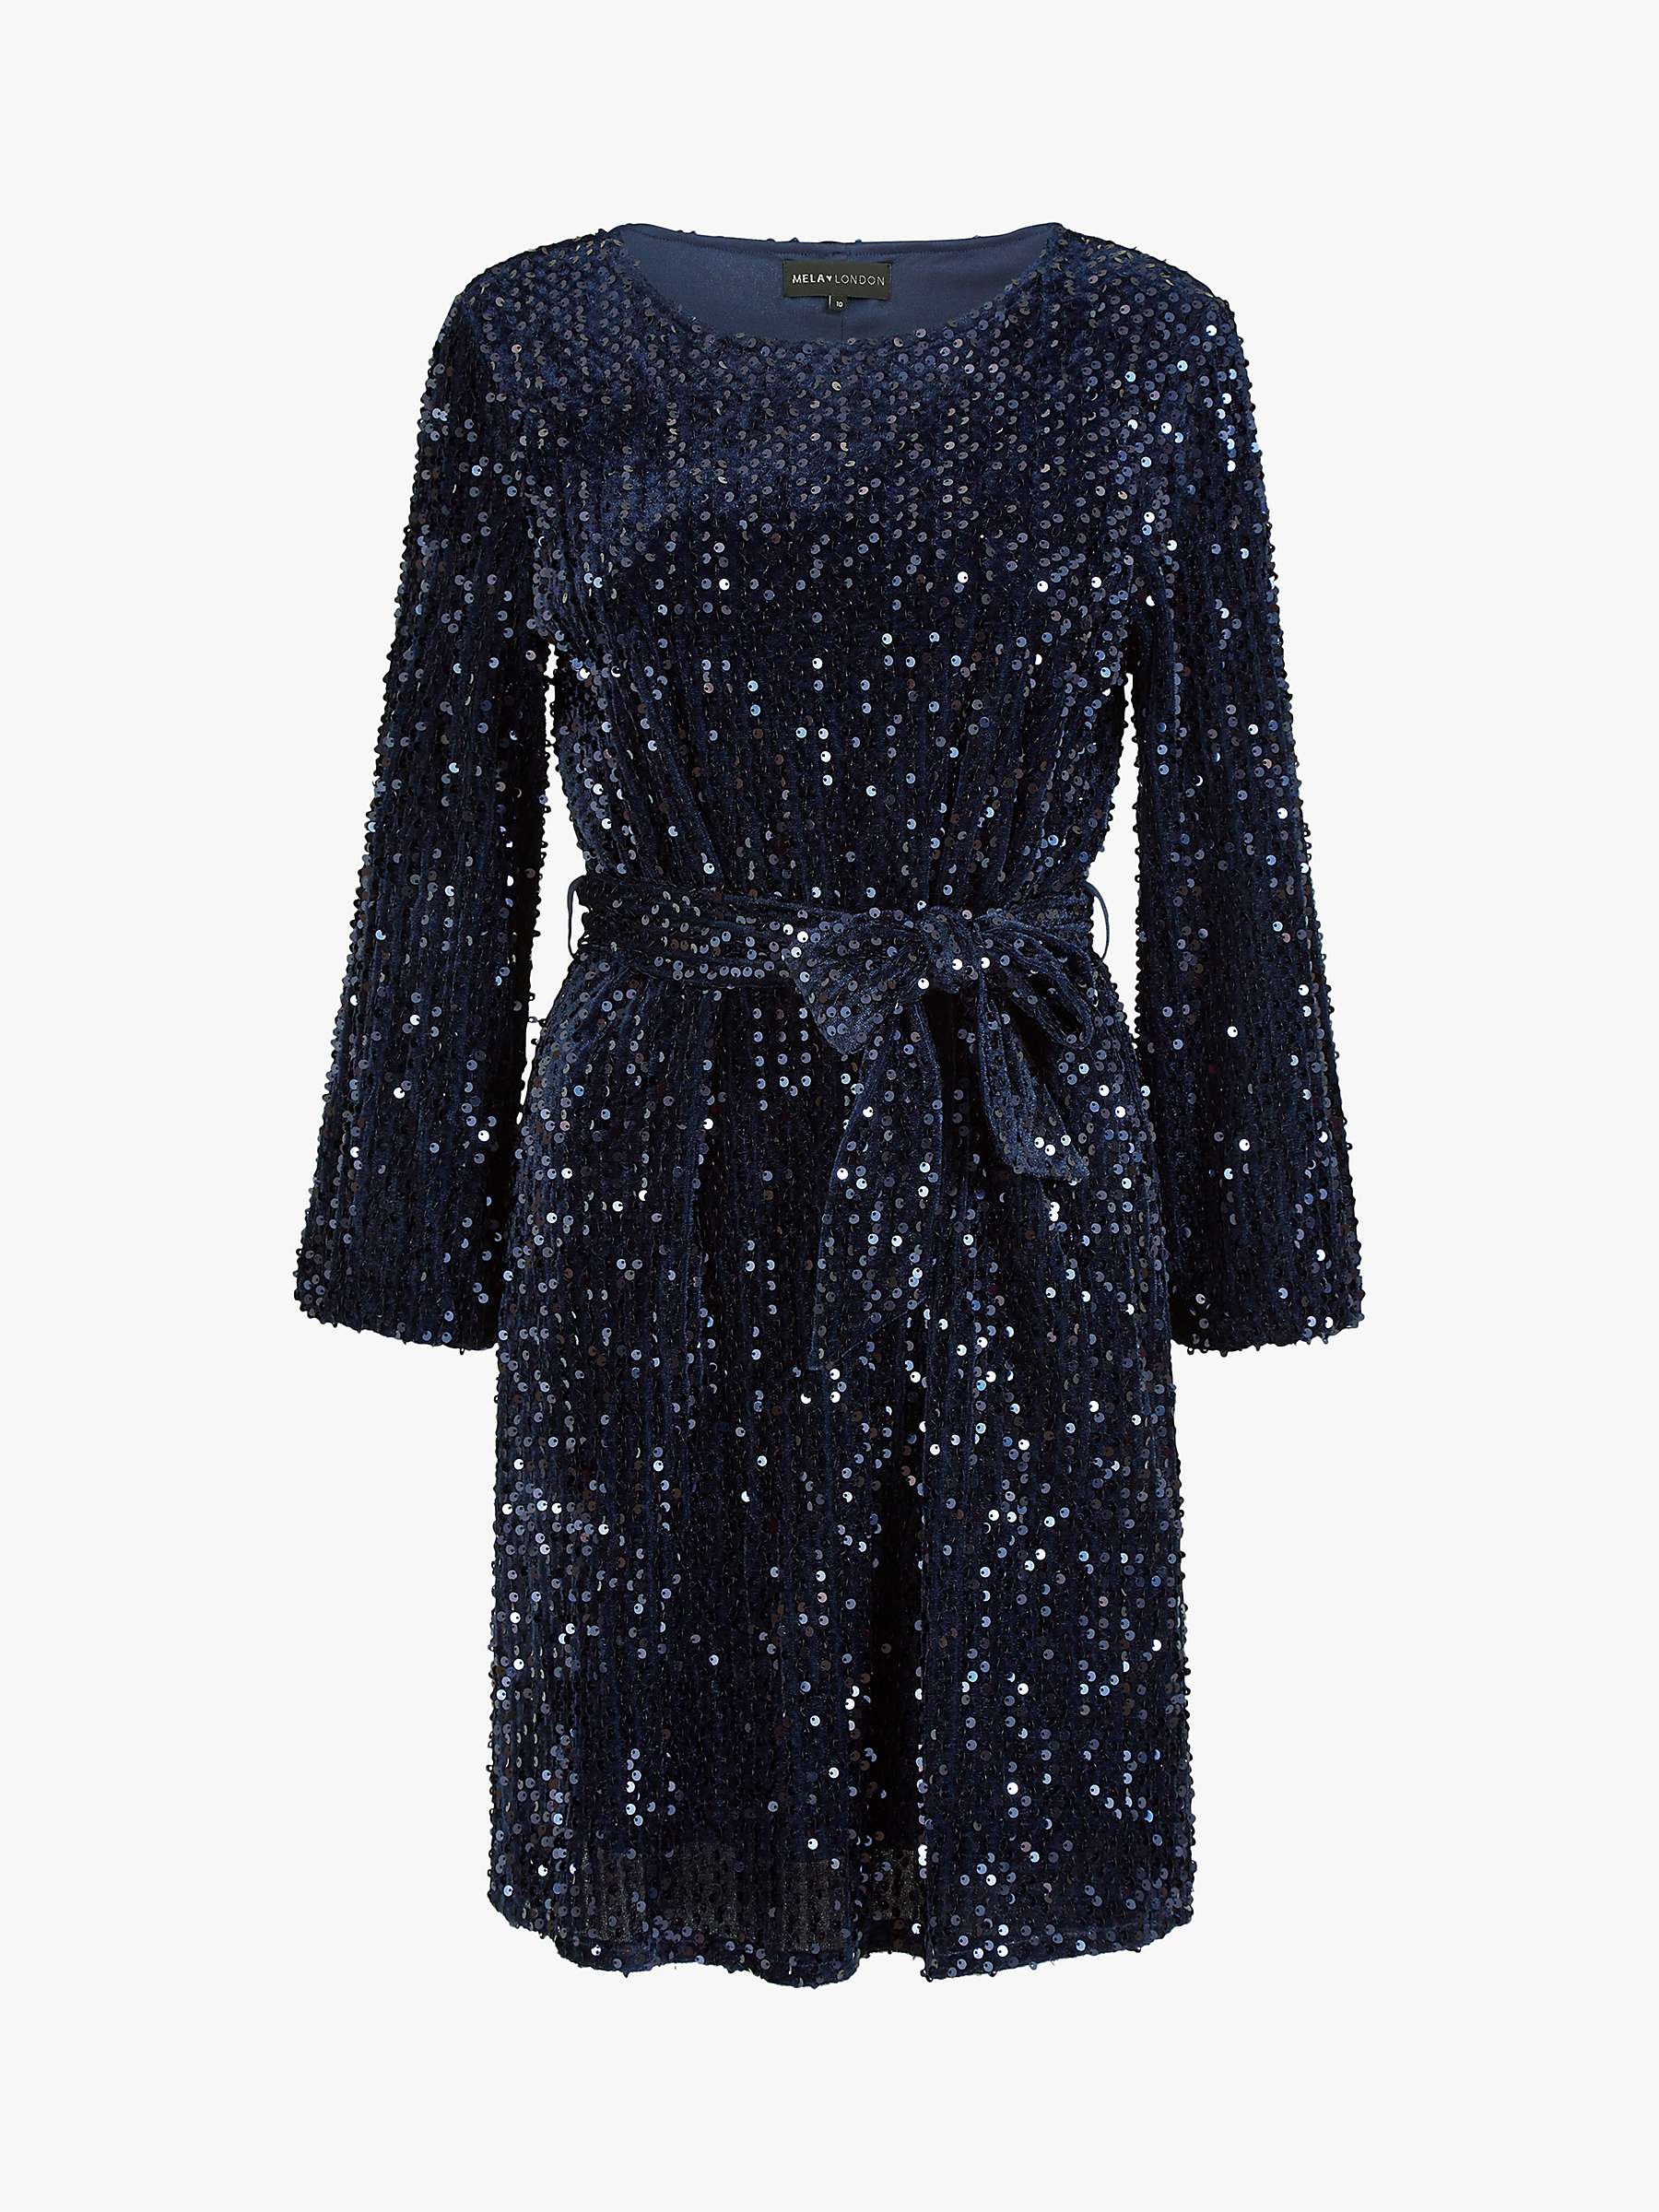 Buy Mela London Mela Sequin Smock Dress Online at johnlewis.com